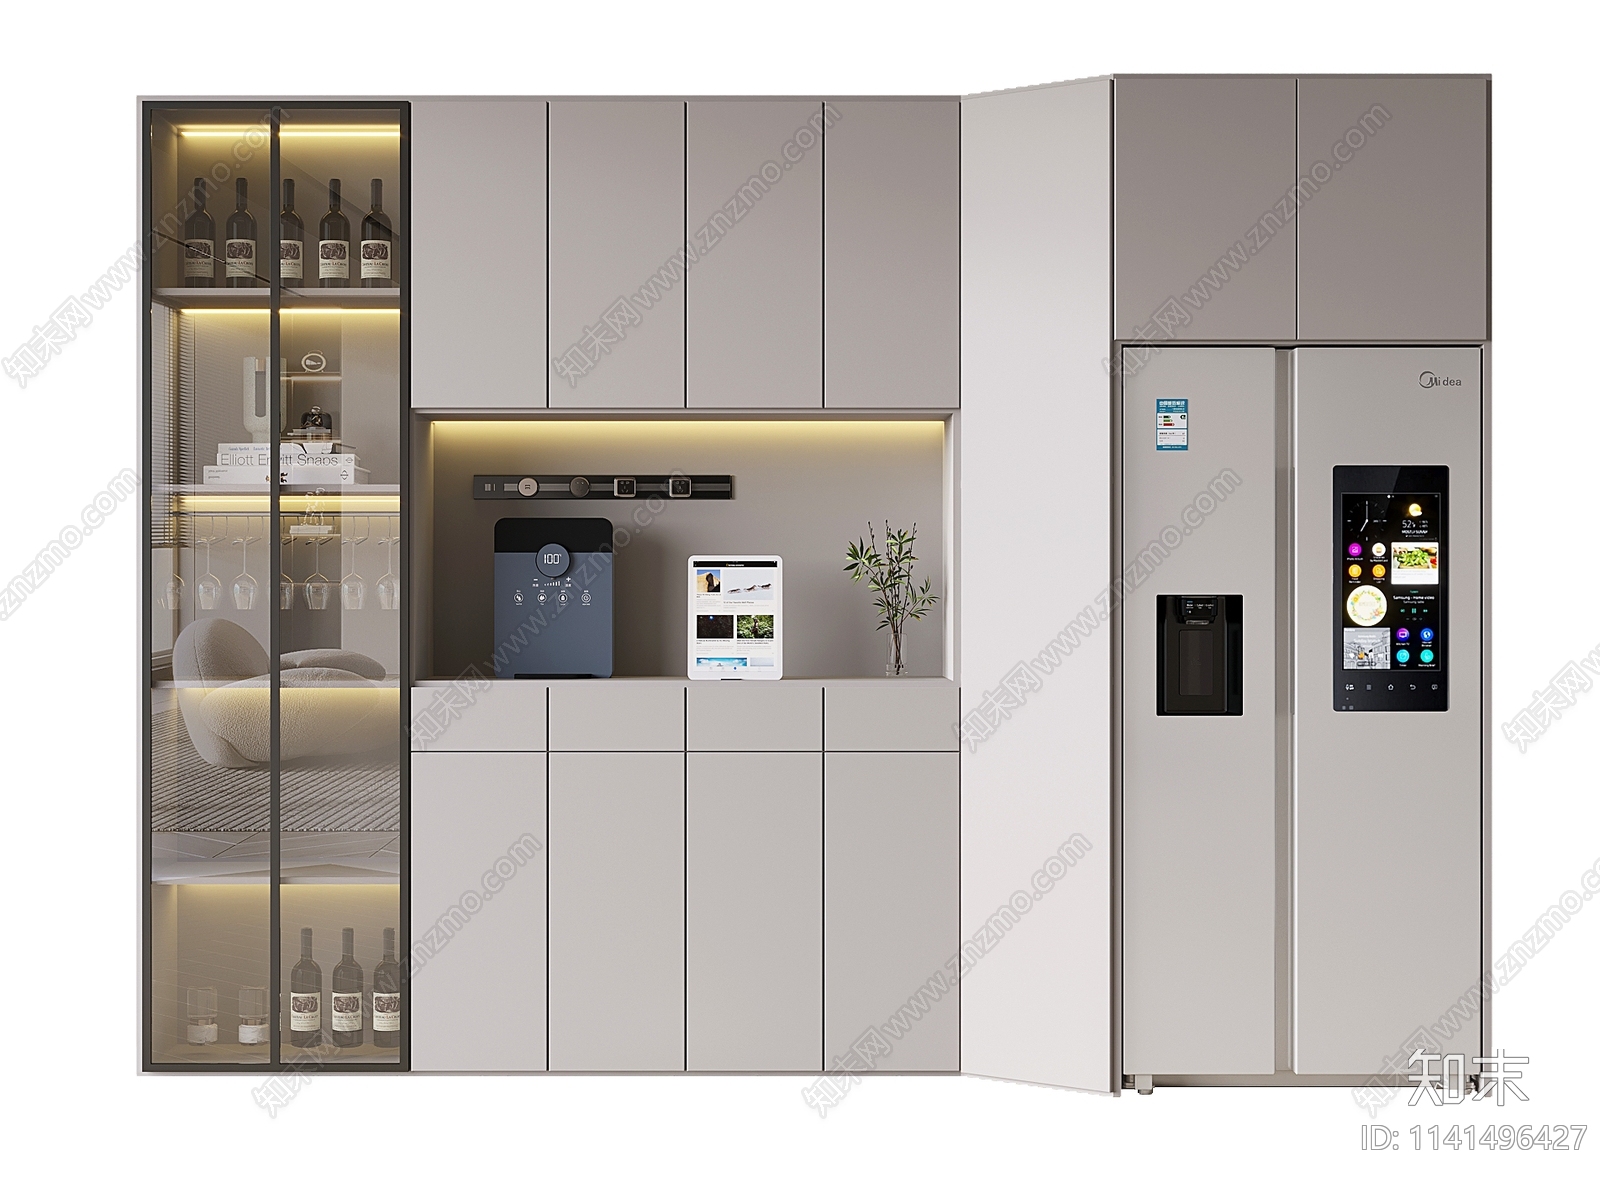 新中式酒柜冰箱免费3d模型下载_ID10074697_3dmax免费模型-欧模网